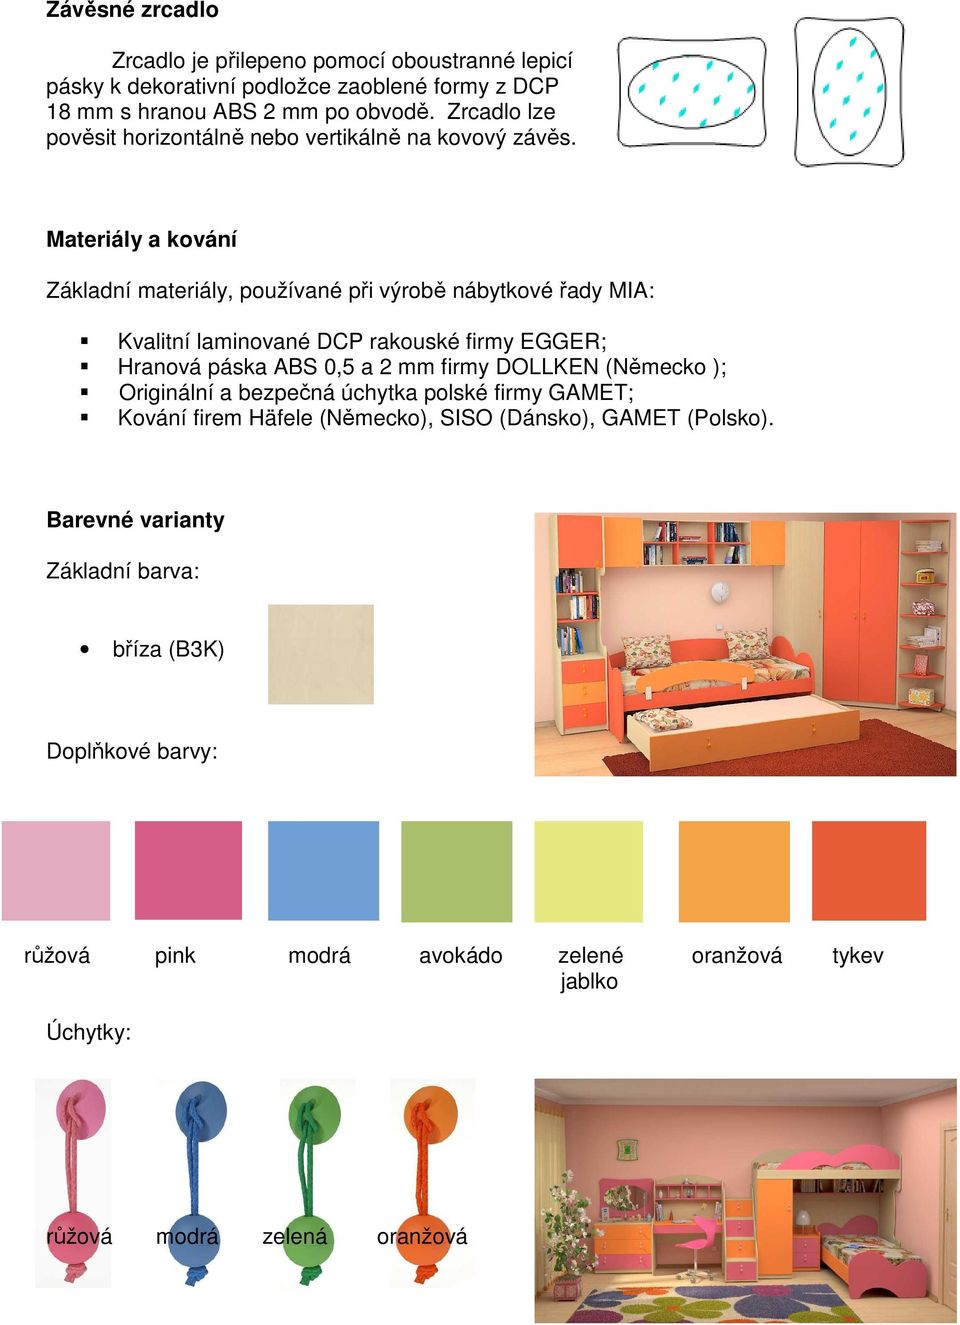 Materiály a kování Základní materiály, používané při výrobě nábytkové řady MIA: Kvalitní laminované DCP rakouské firmy EGGER; Hranová páska ABS 0,5 a 2 mm firmy